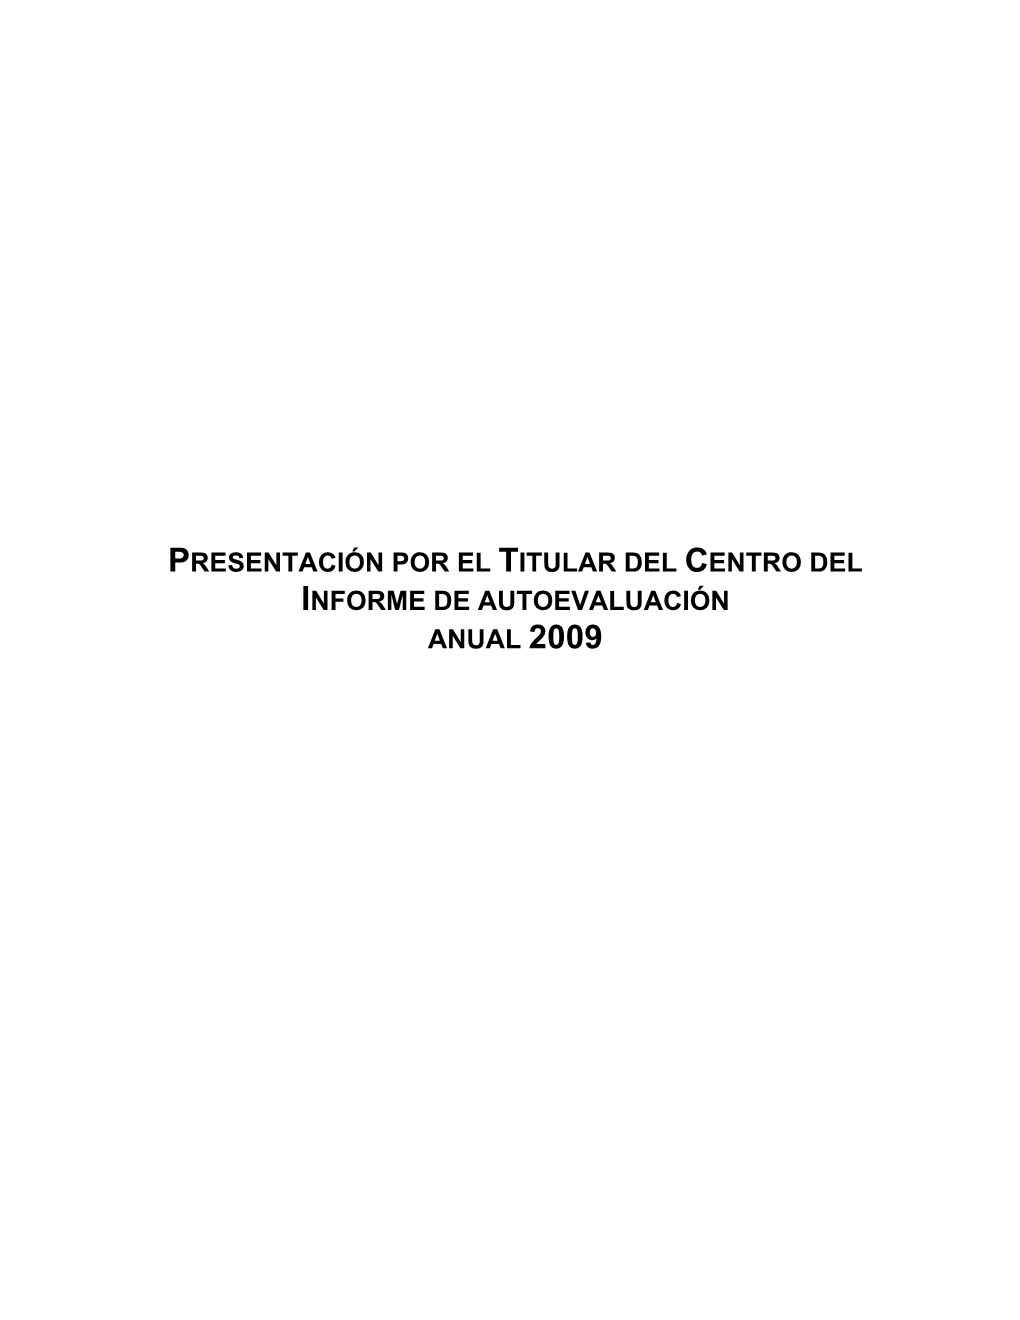 Presentación Por El Titular Del Centro Del Informe De Autoevaluación Anual 2009